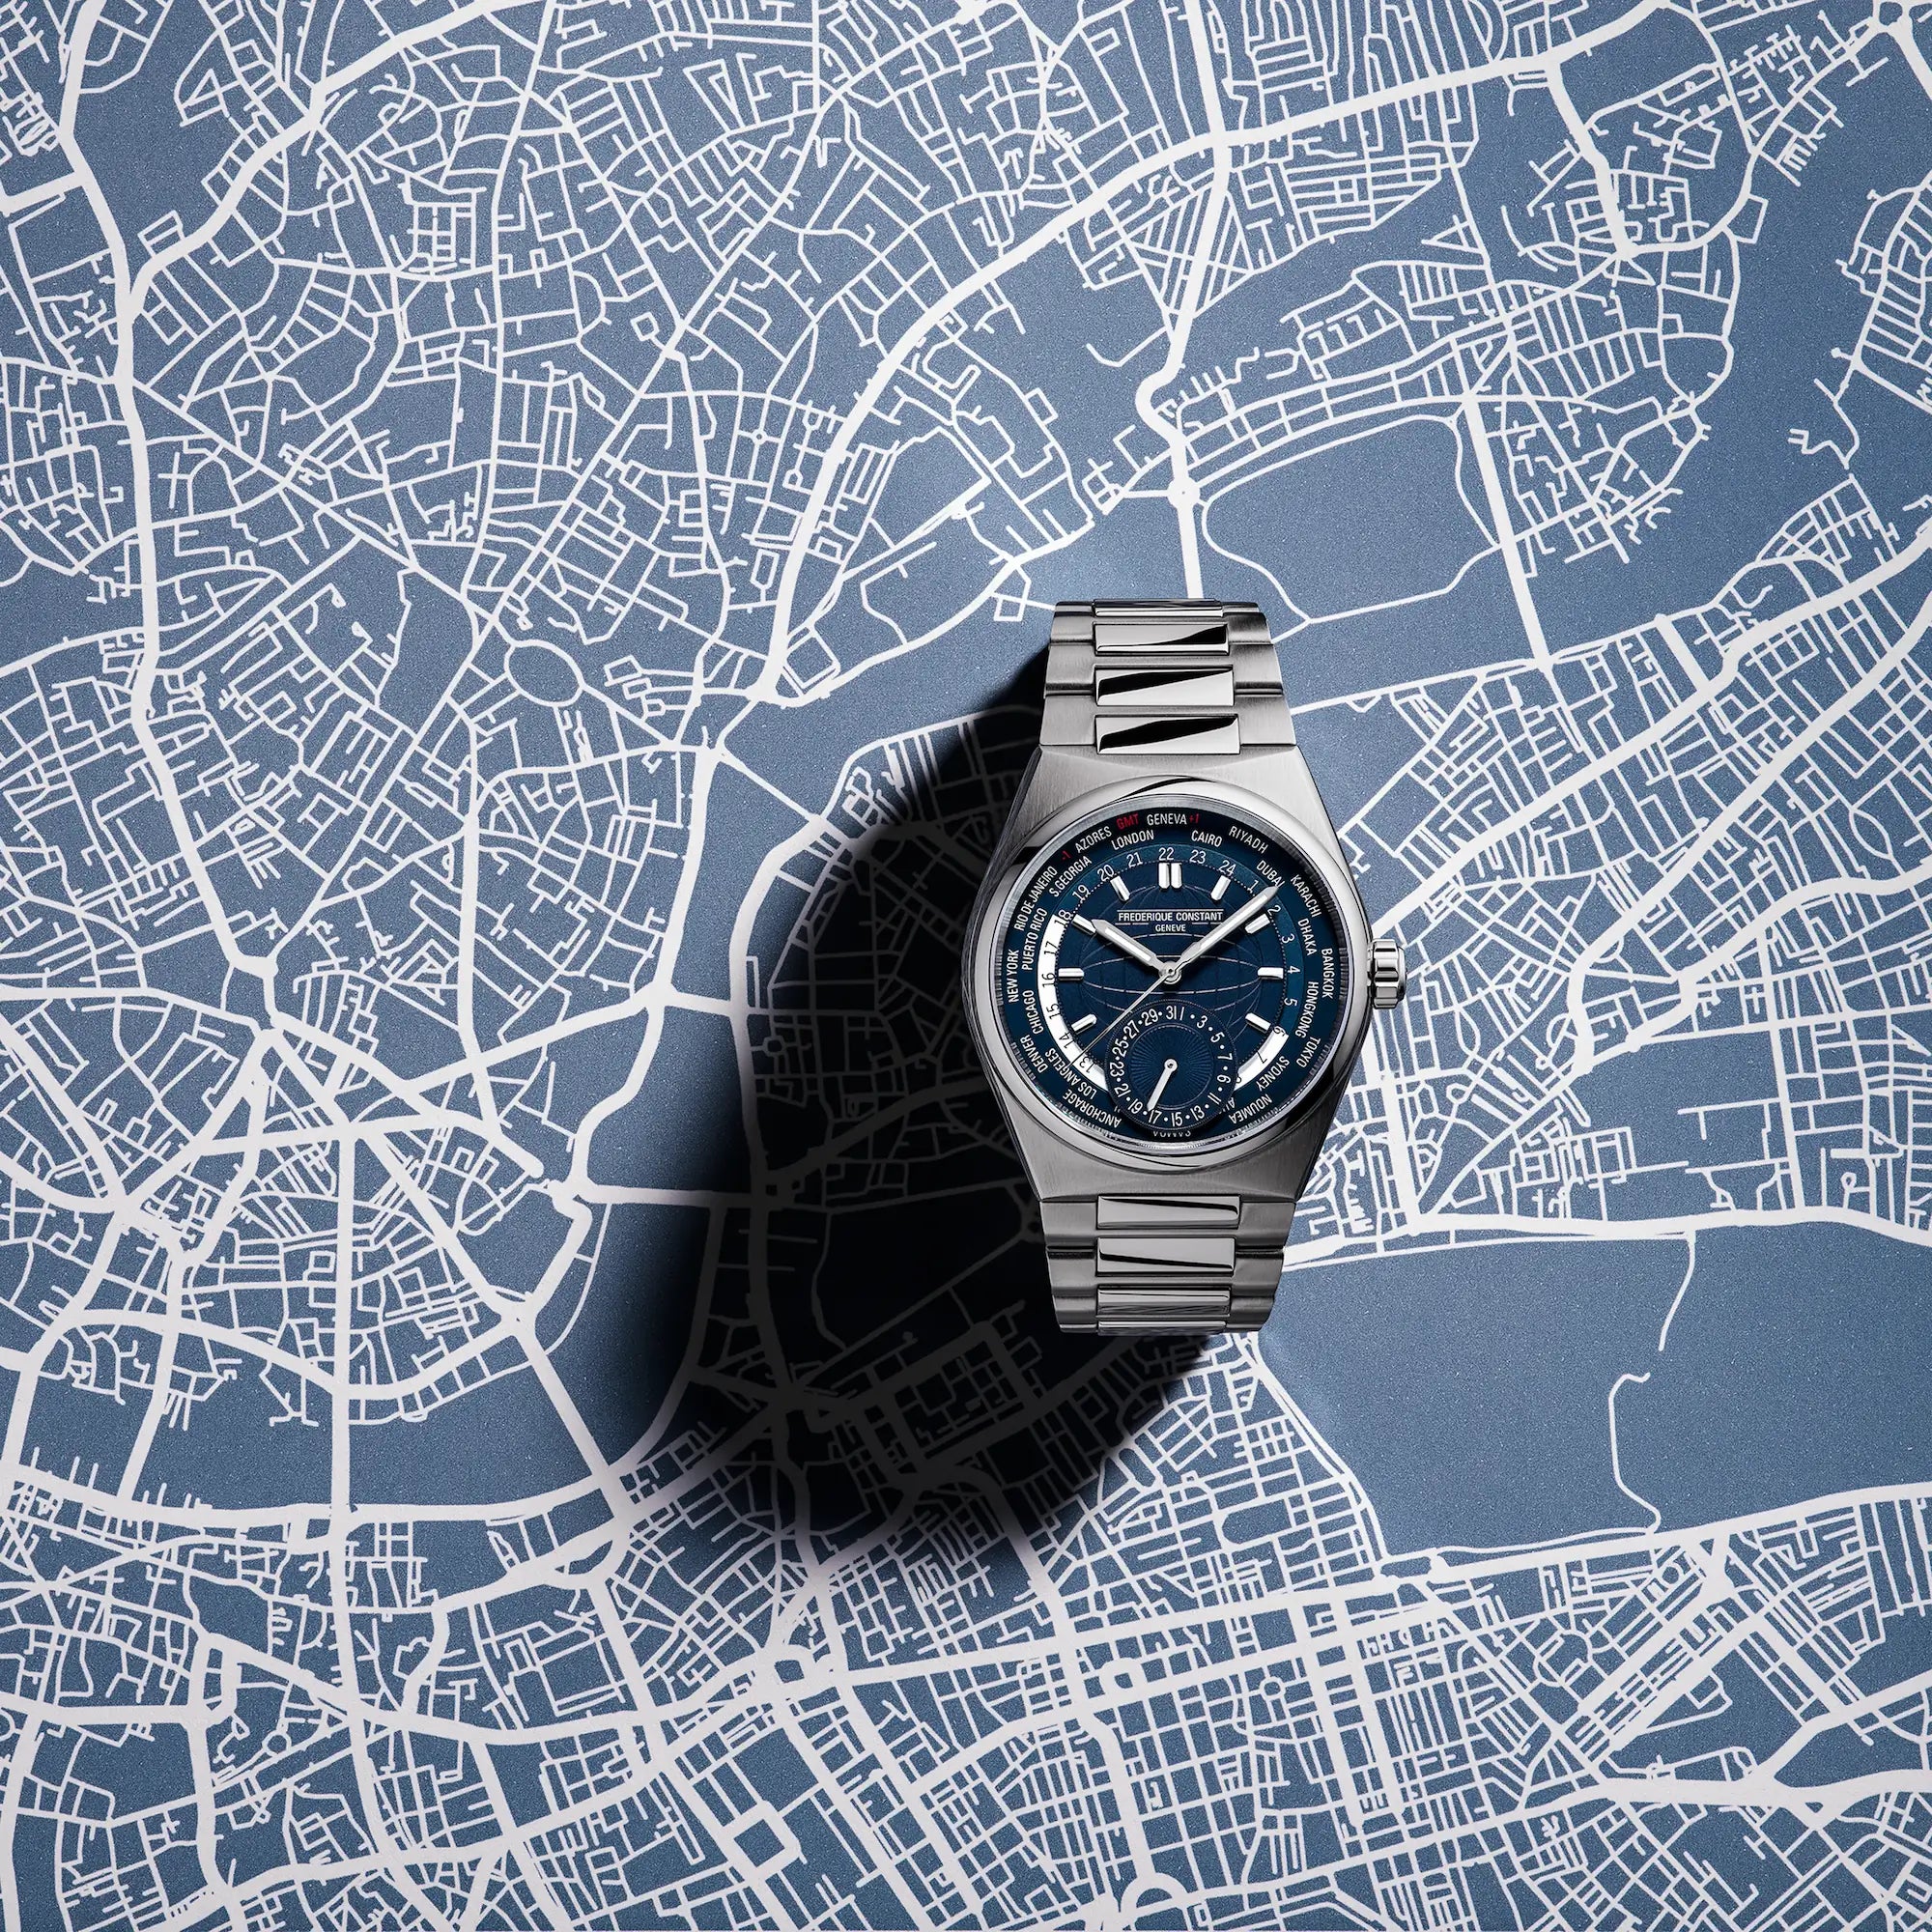 Produktfotografie der Worldtimer-Uhr von Frederique Constant aus der Highlife Kollektion mit einem blauen Zifferblatt, das verschiedene Städte und deren Zeitzonen zeigen kann